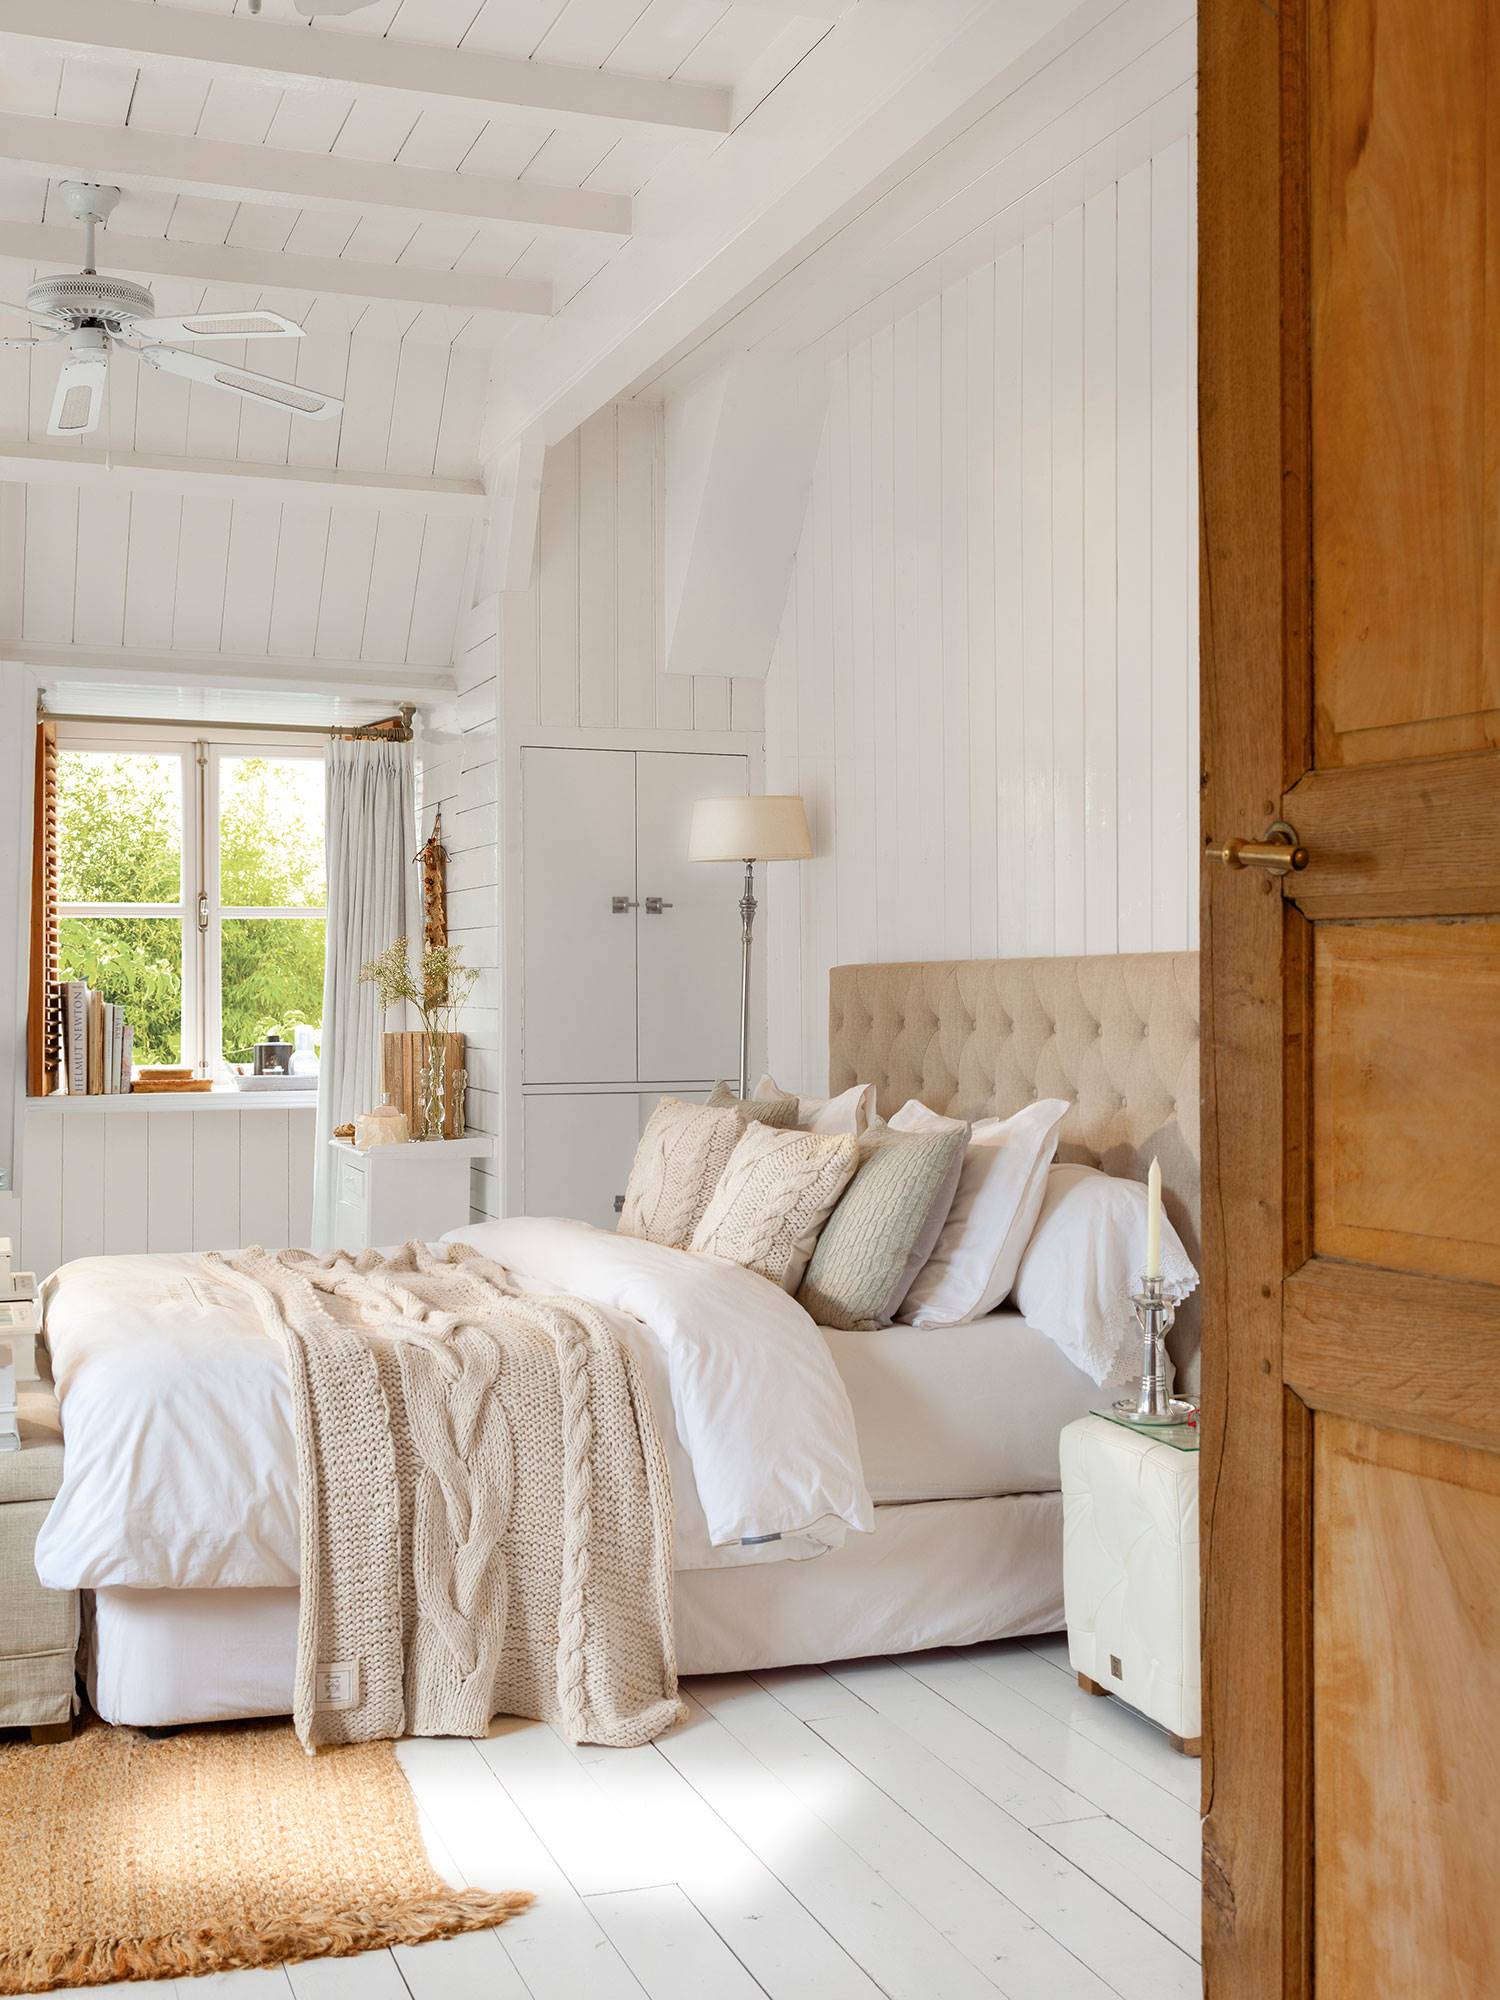 Dormitorio de estilo nórdico decorado en blanco con lamas de madera y cabecero capitoné beige 8ce14922